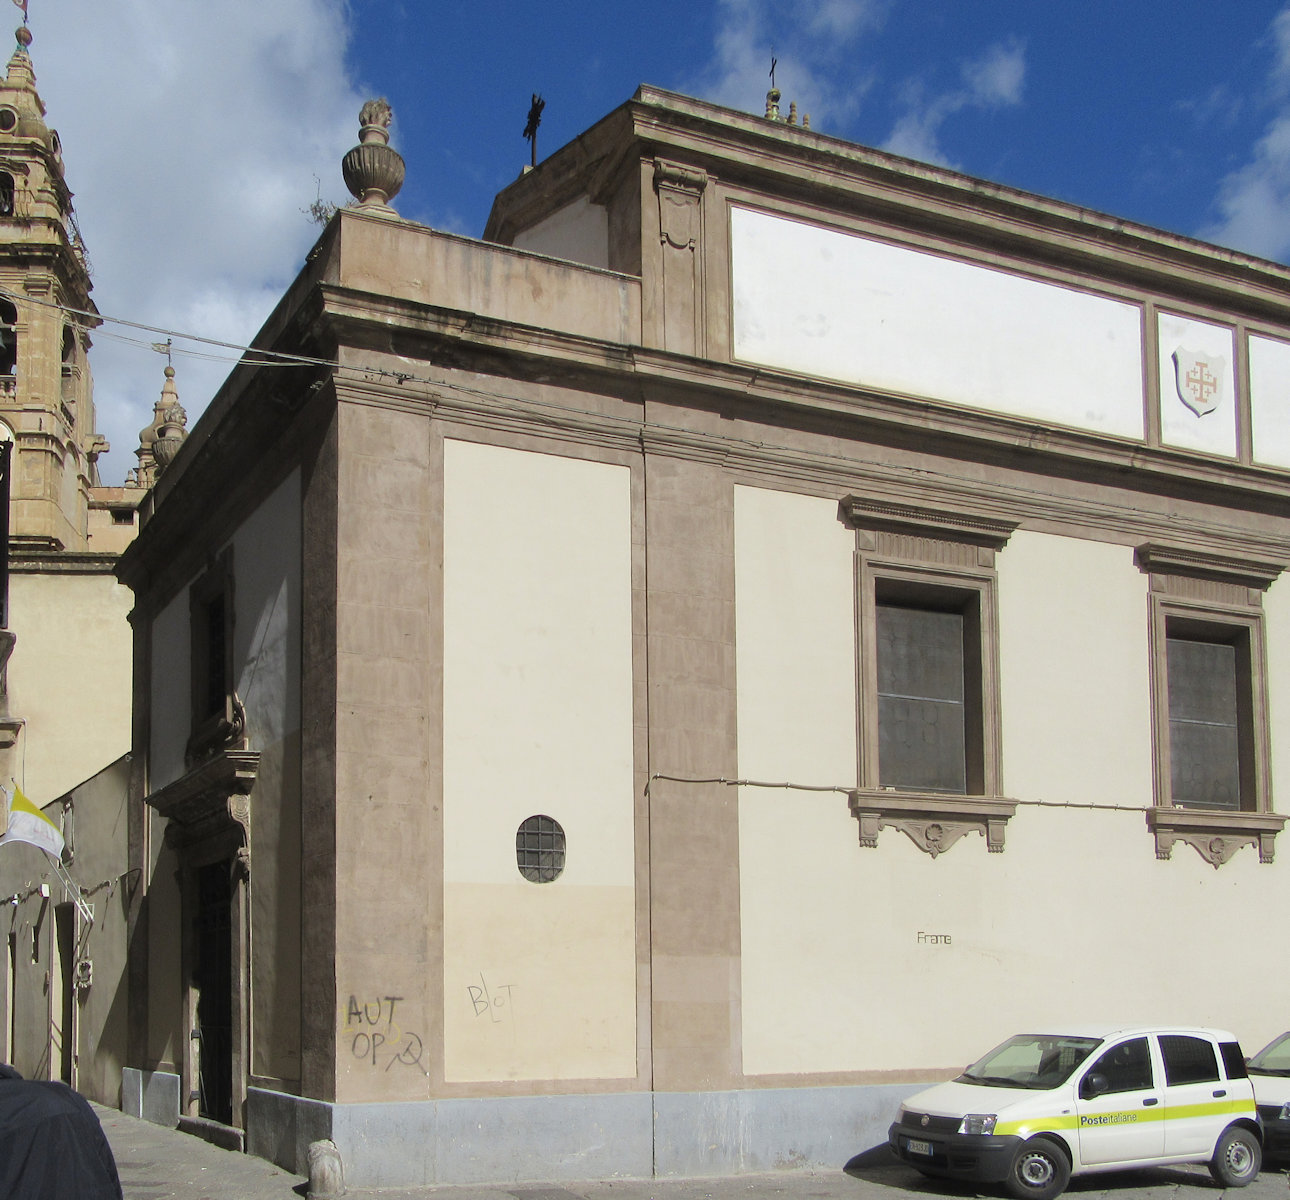 Rosalias angebliches Elternhaus, ursprünglich zur Kirche umgewandelt, seit 1415 das Oratorium Santa Caterina d'Alessandria all'Olivella in Palermo